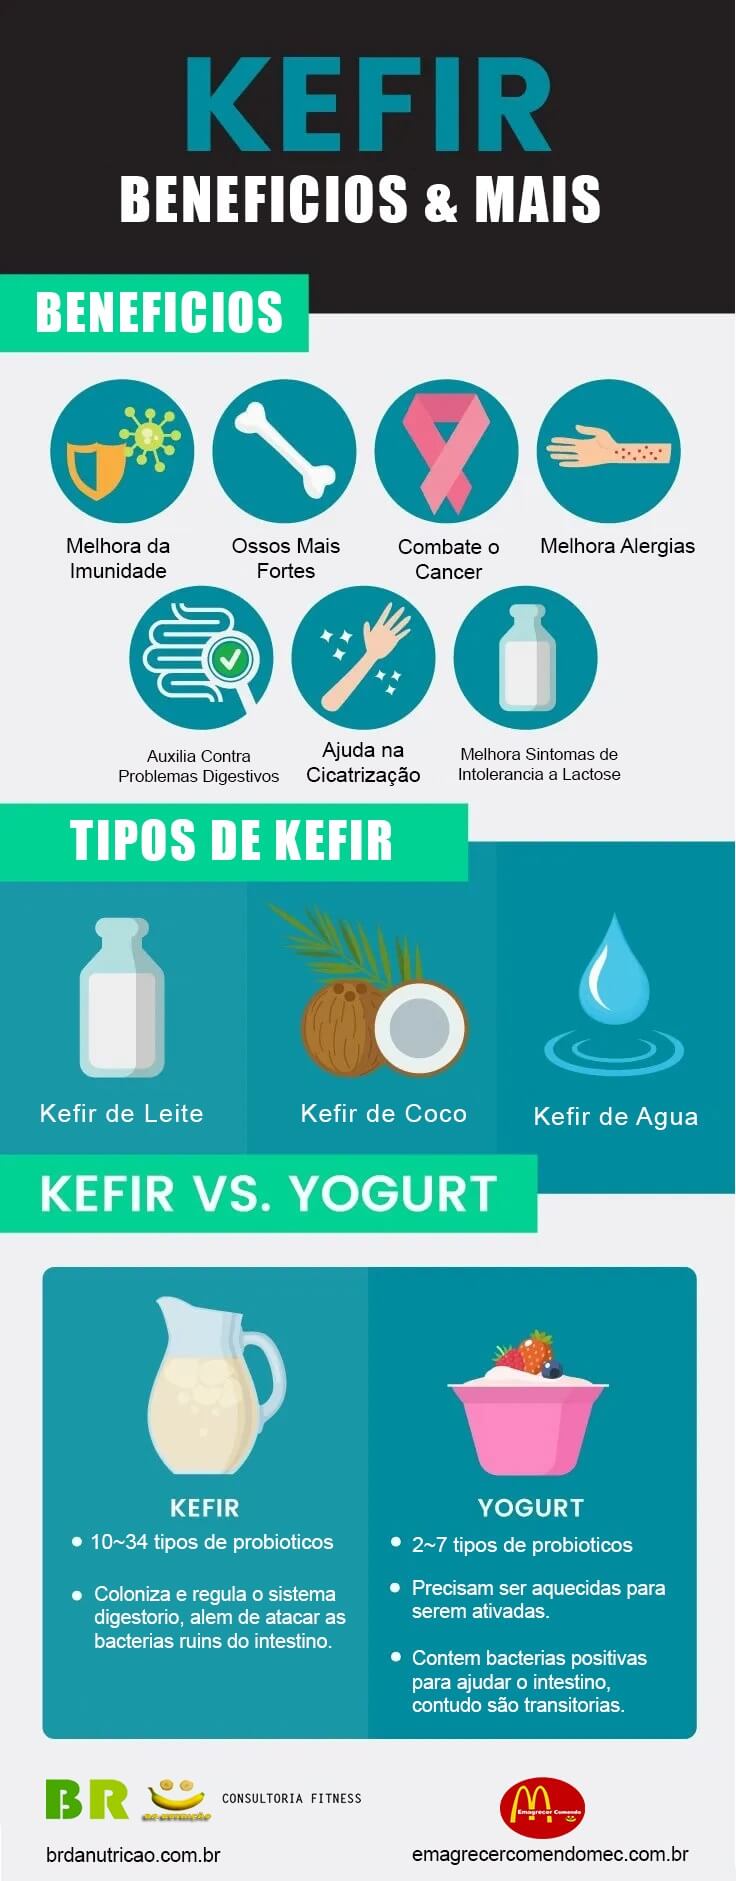 7 Beneficios do Kefir de Leite Comprovados Pela Ciencia